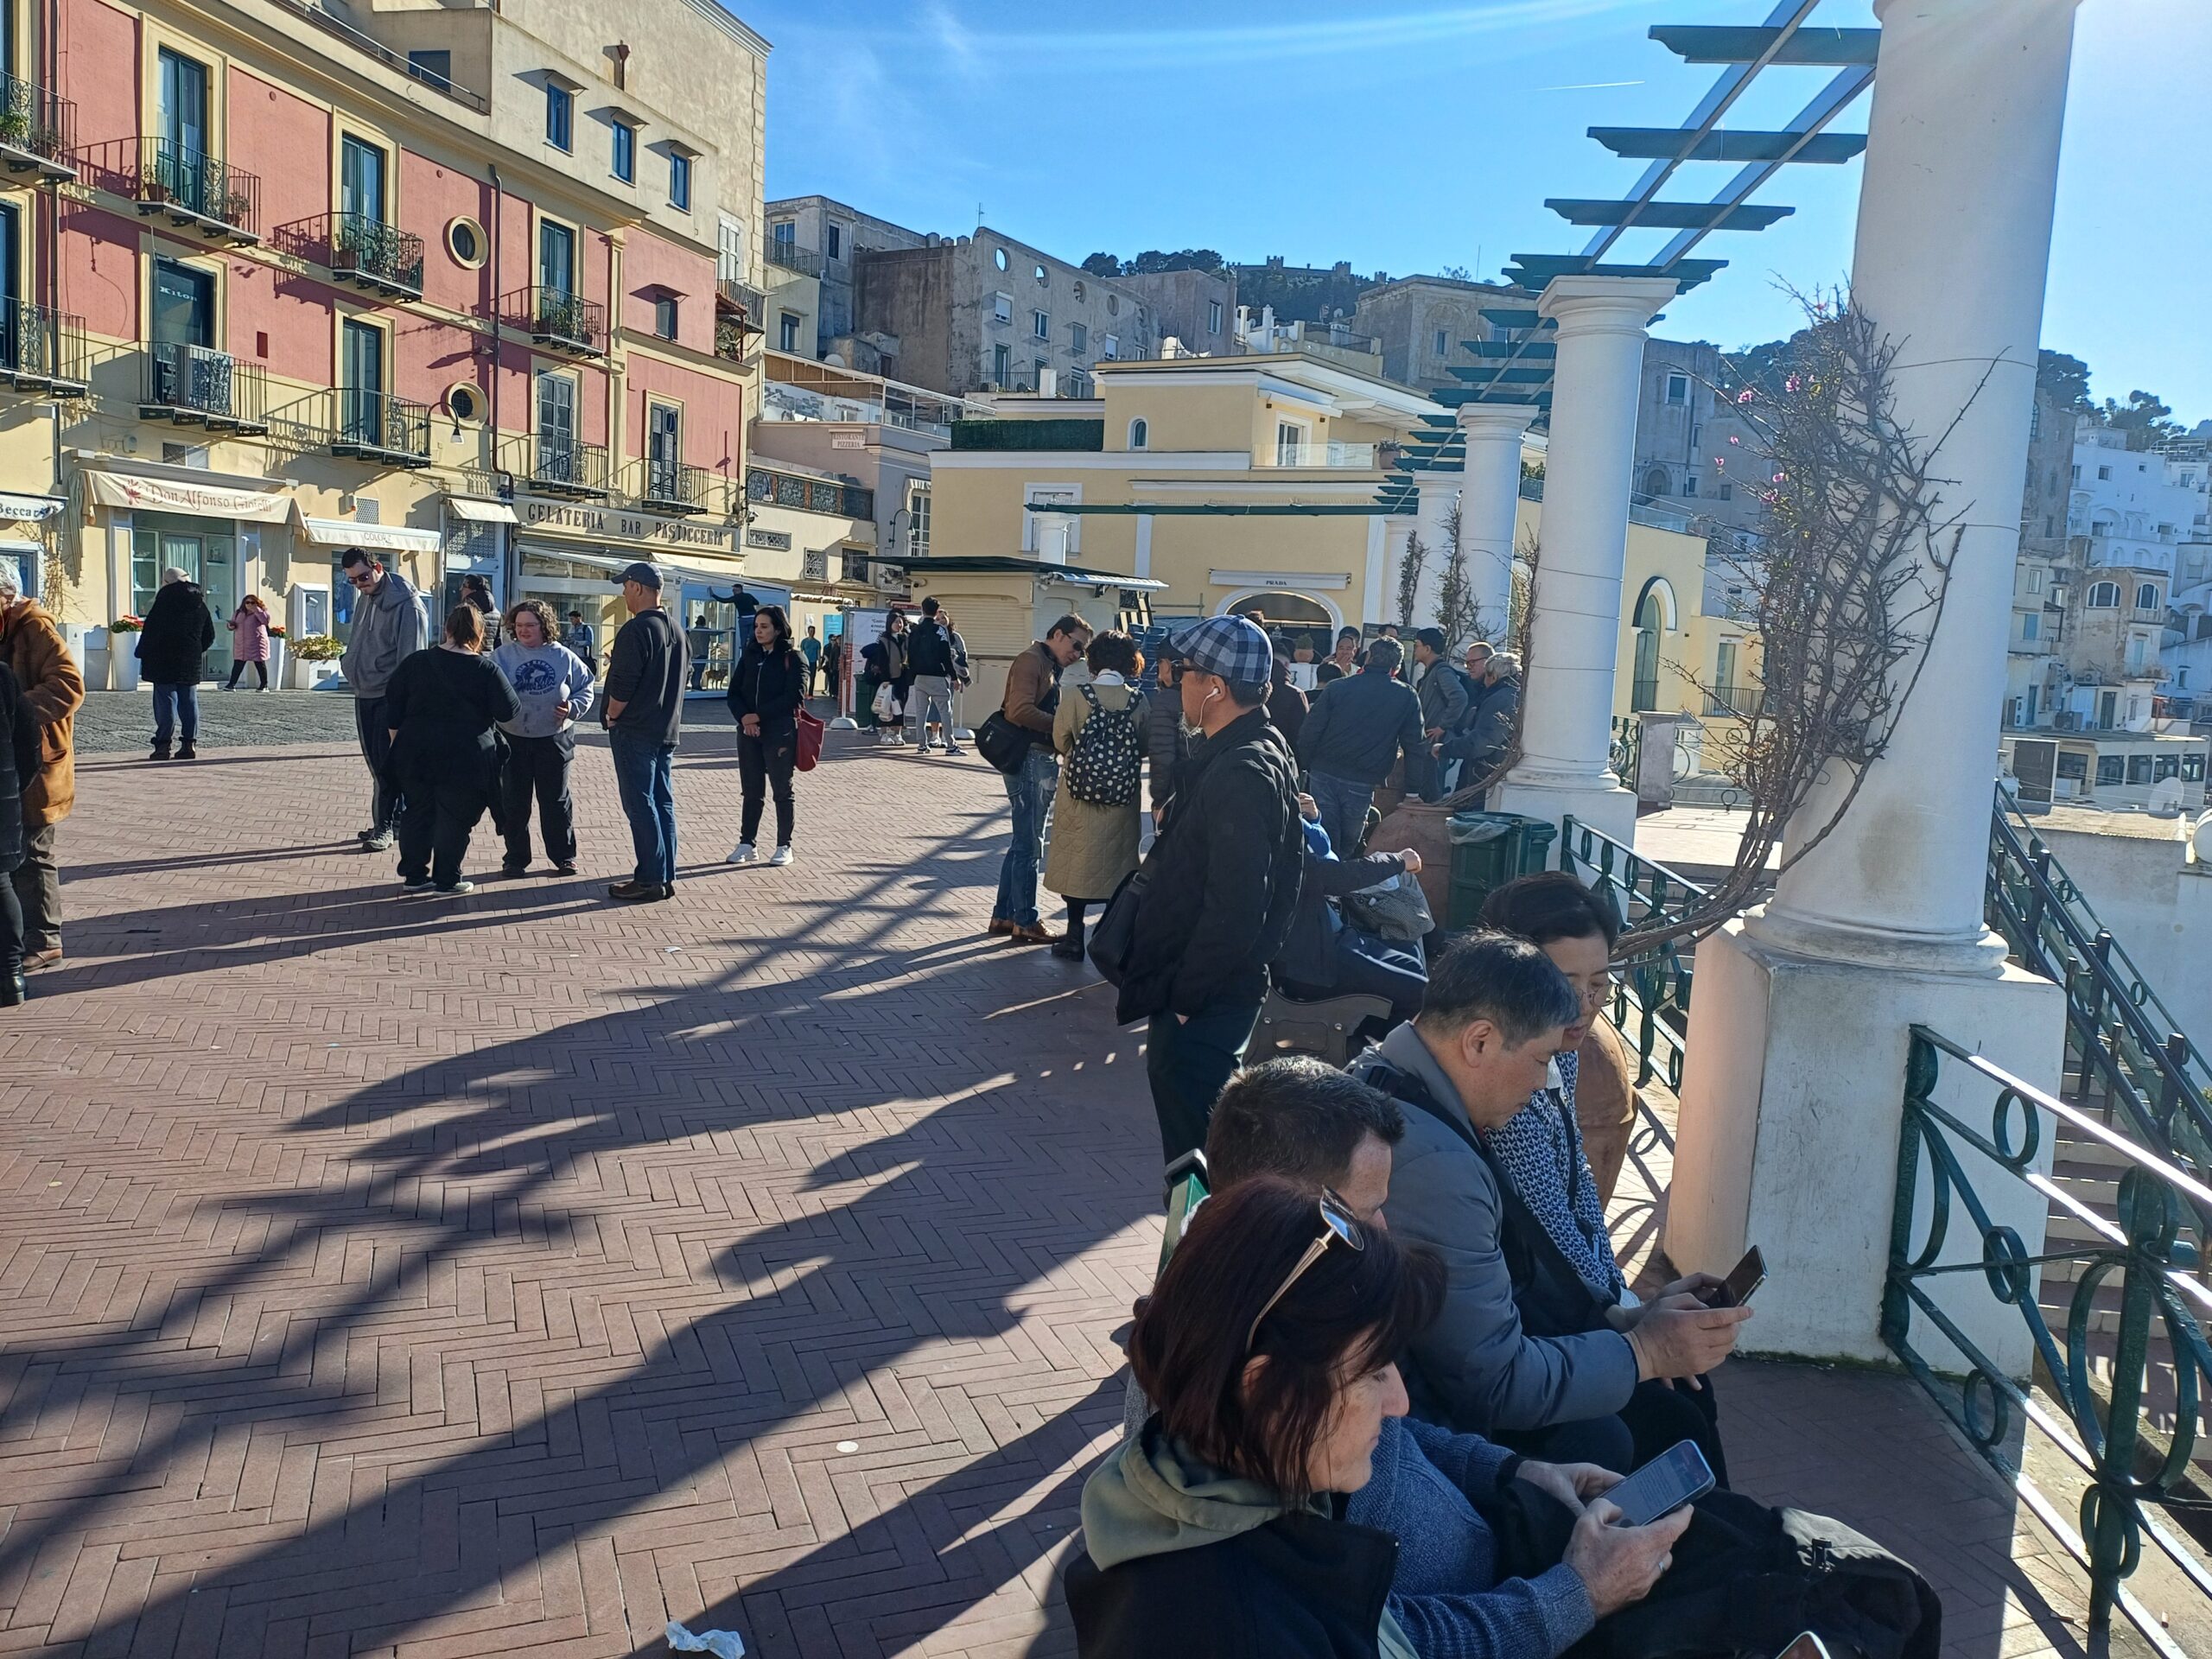 Sole e temperatura gradevole, febbraio con i turisti a Capri. Le foto dalla Piazzetta